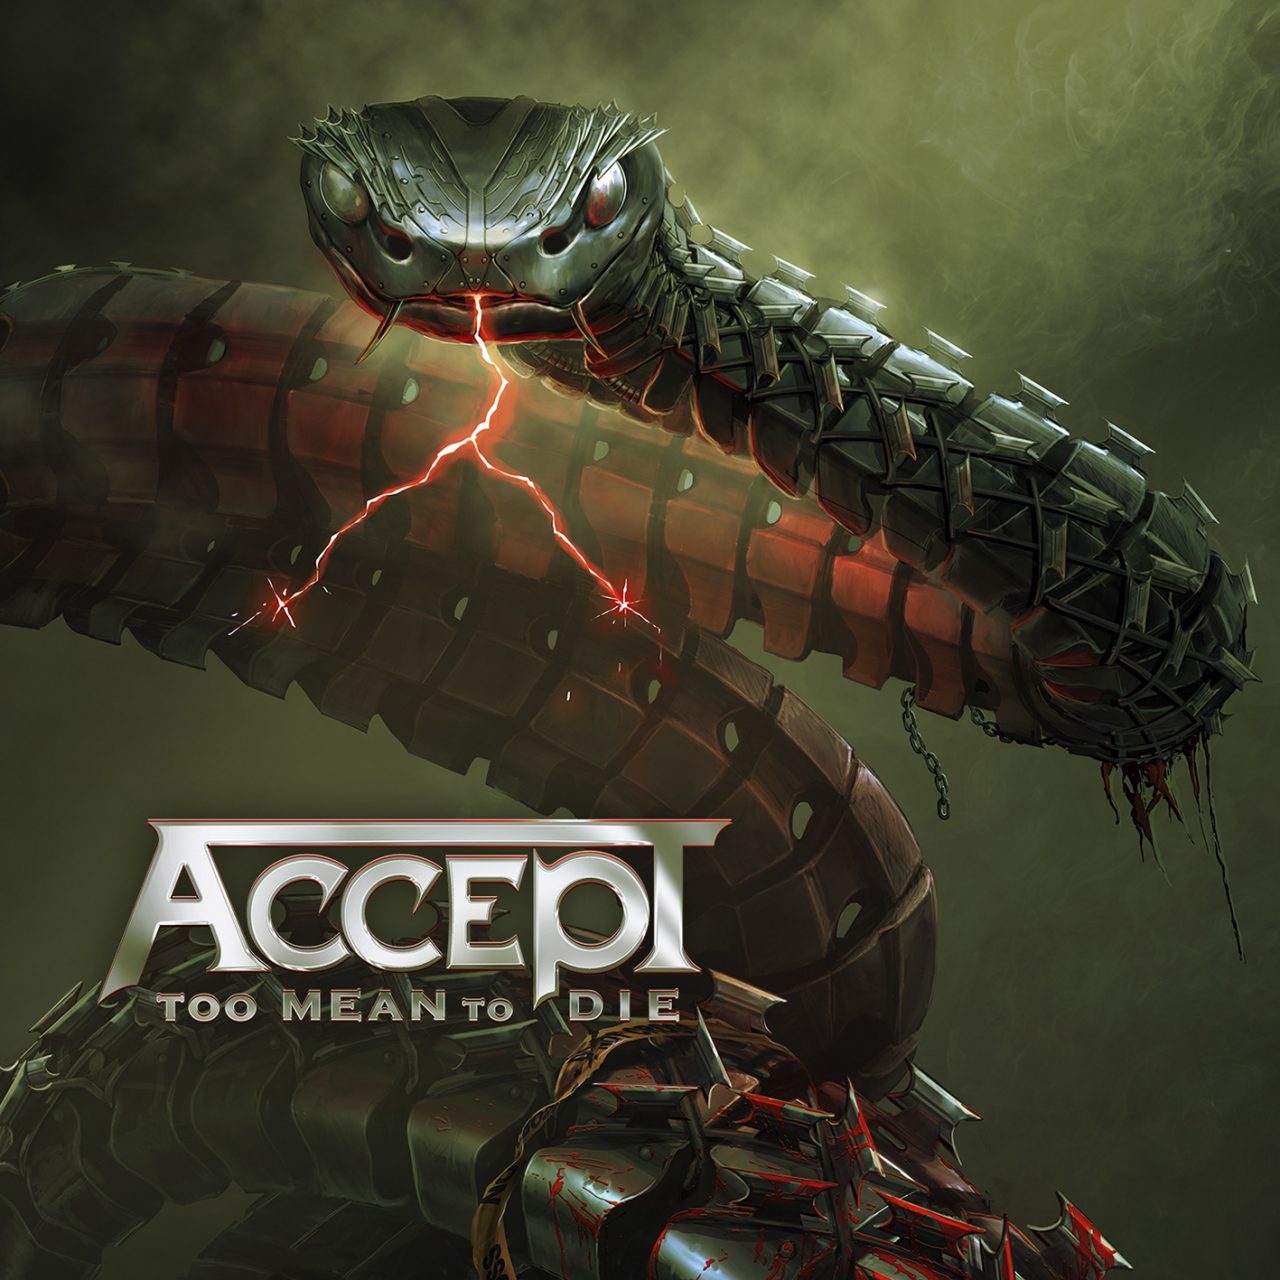 Auf dem Albumcover von "Too Mean To Die", dem 16. Studioalbum von Accept, ist eine Schlange zu sehen.